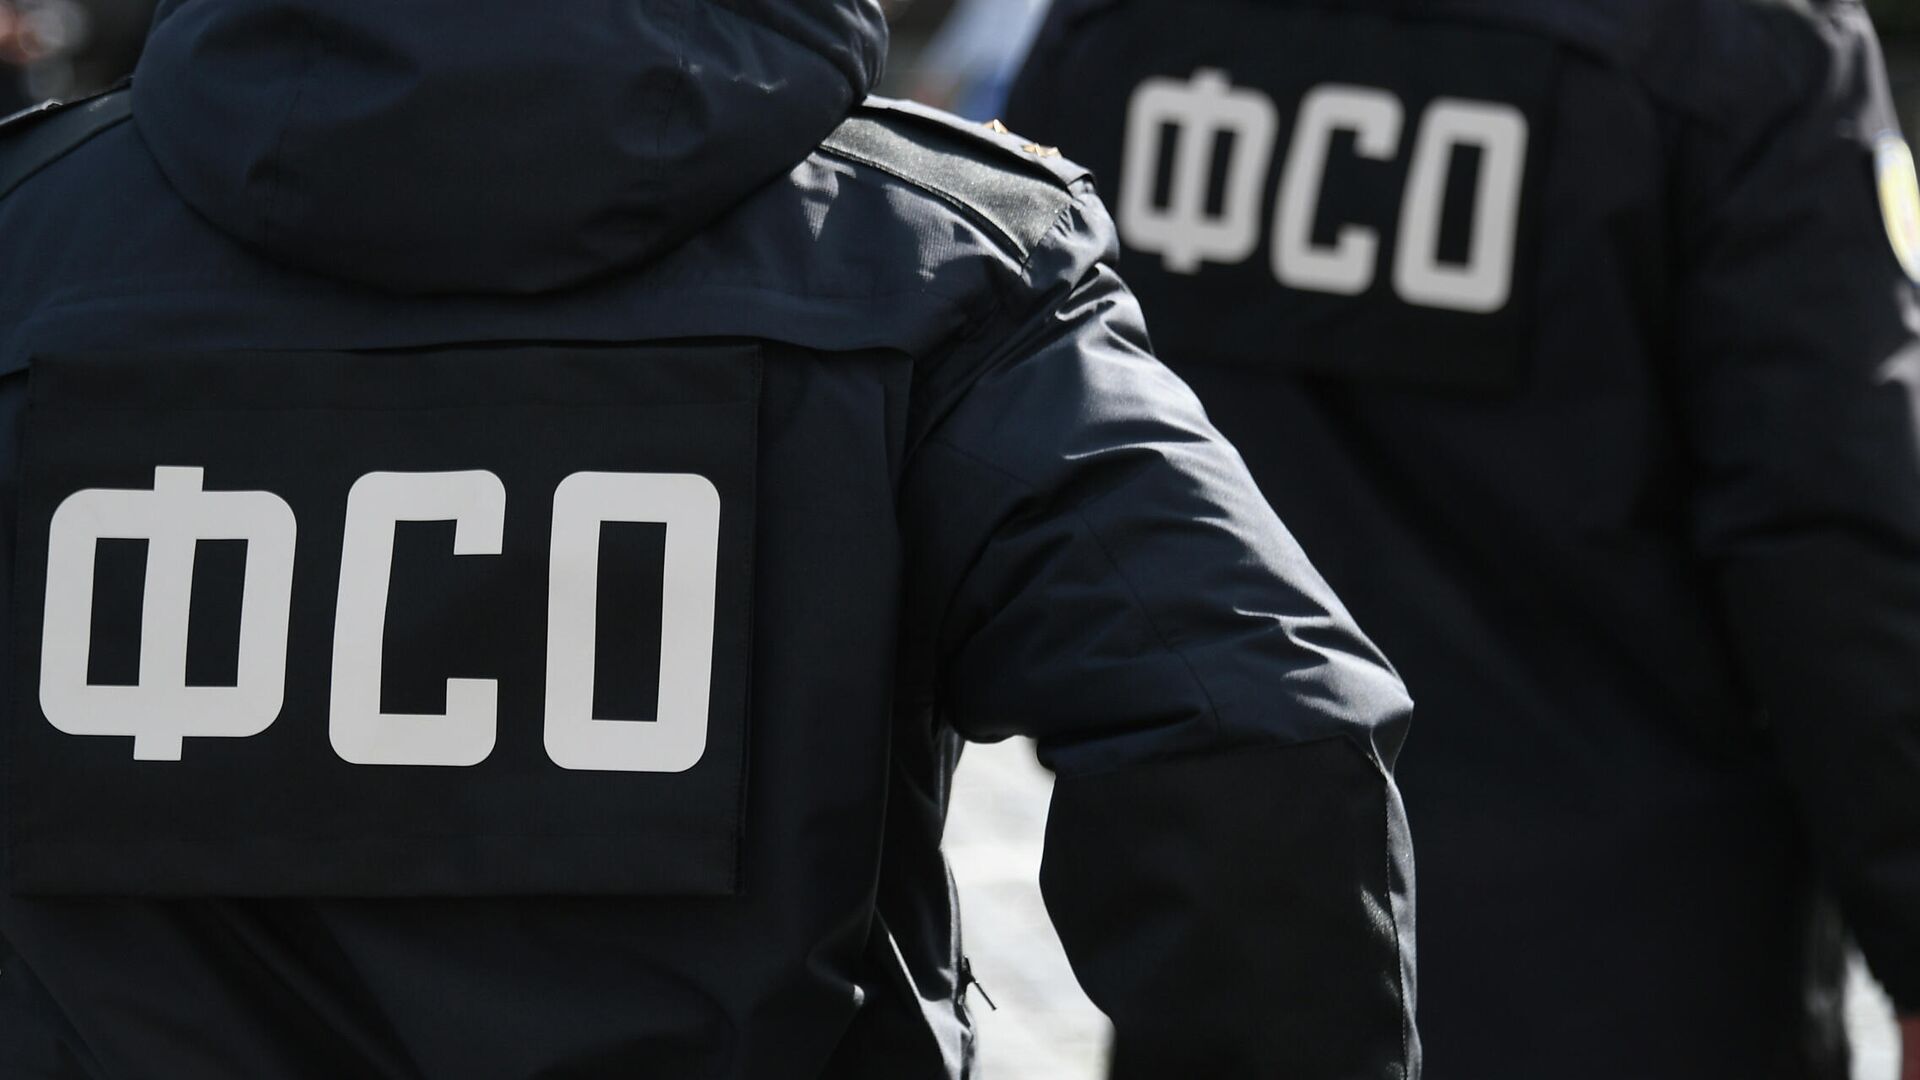 В Москве стартовали крупномасштабные учения Федеральной службы охраны